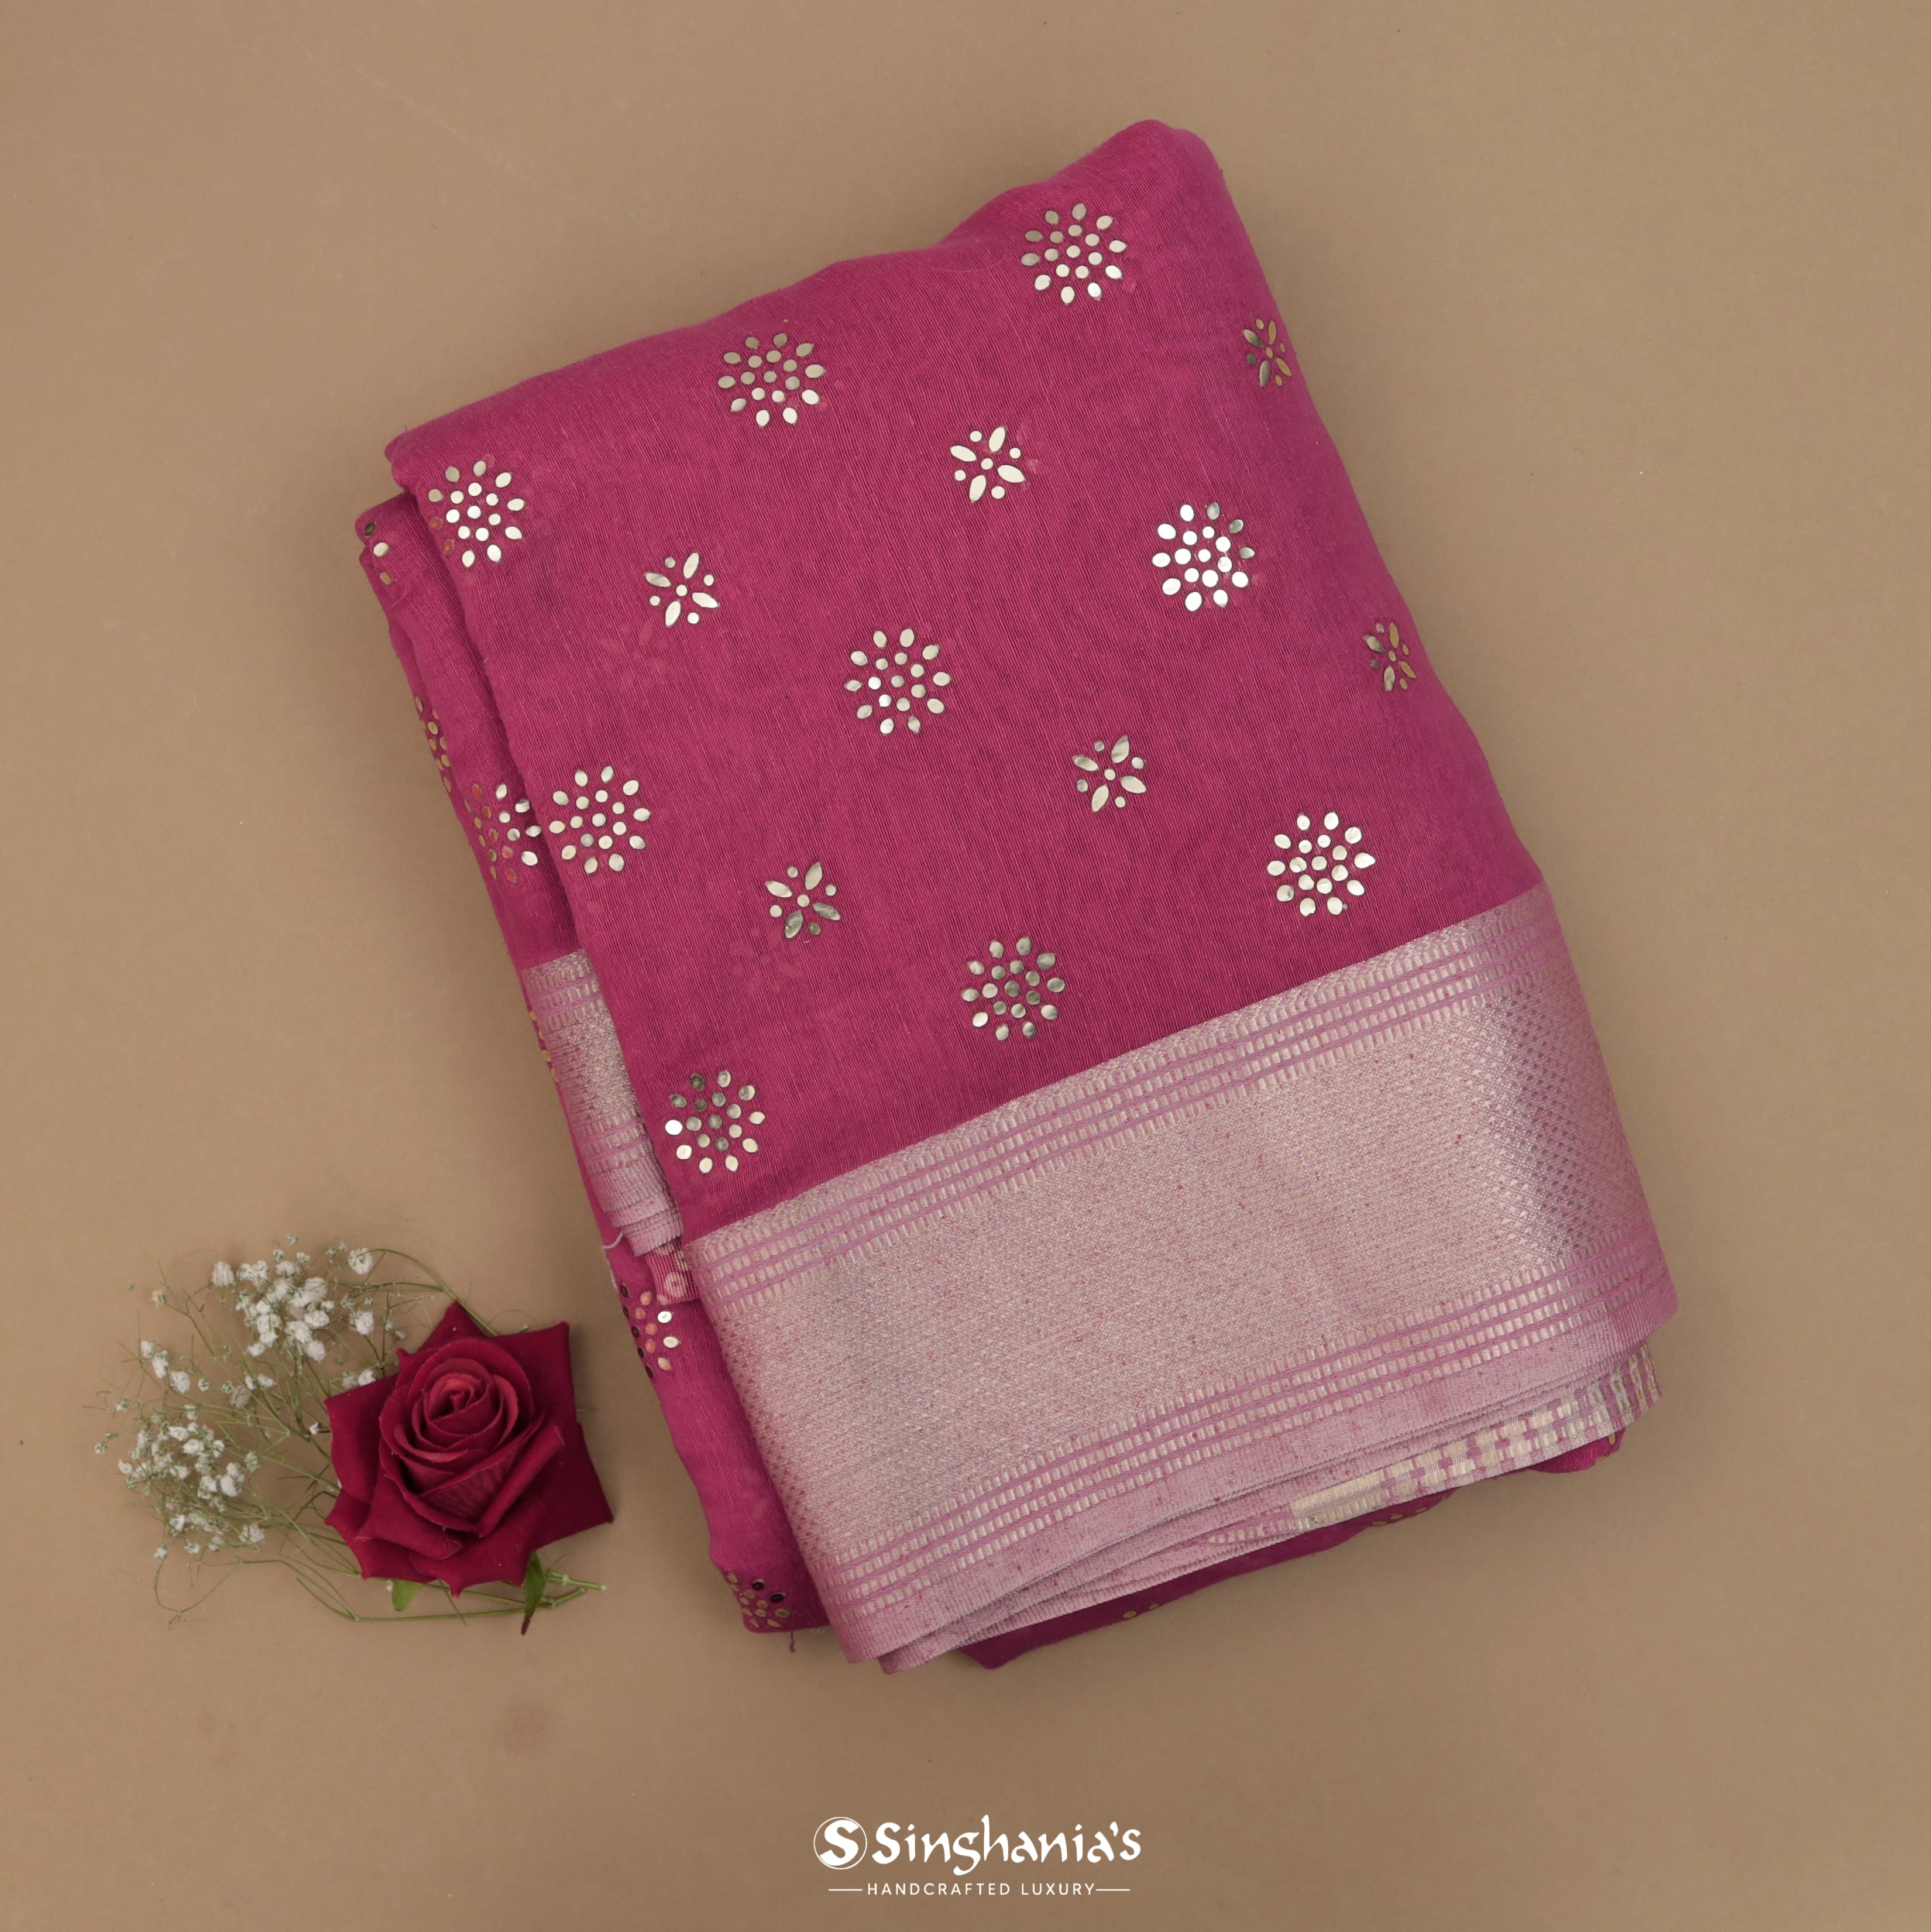 Amarnath Pink Linen Mukaish Saree With Foil Print